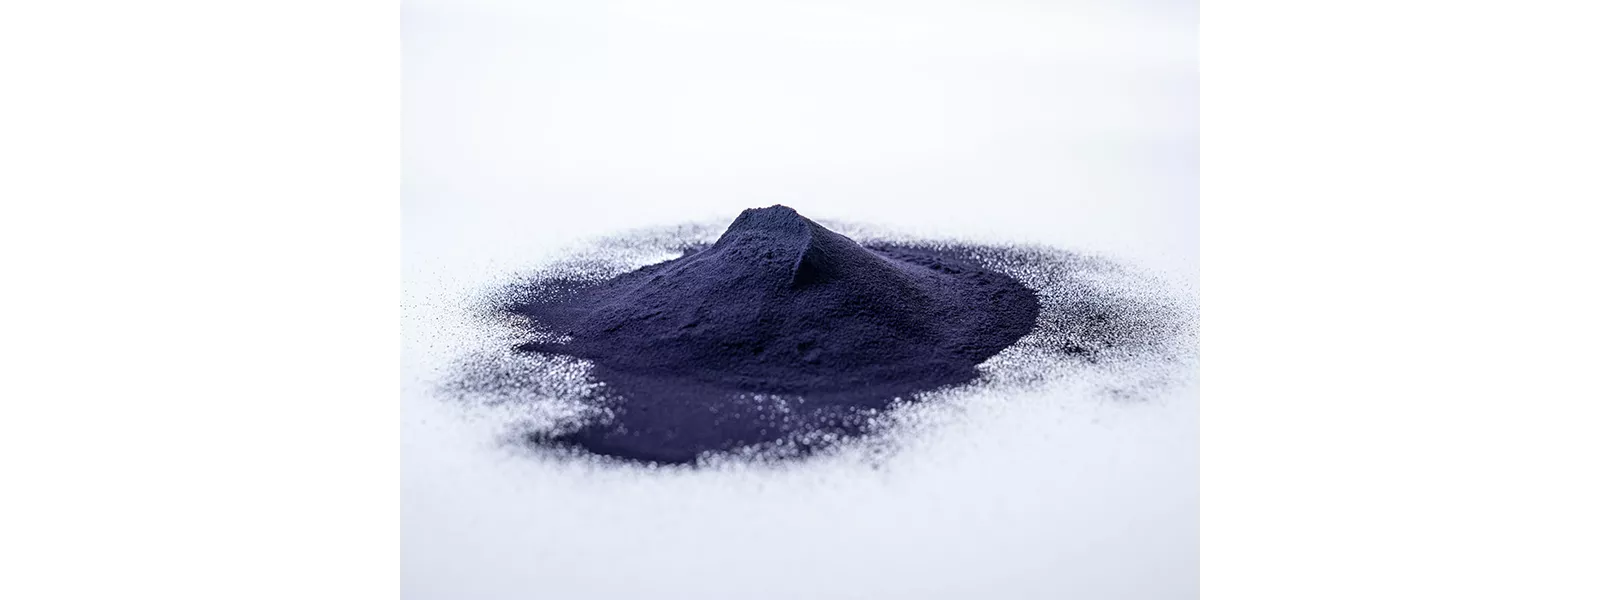 Pile of tungsten powder